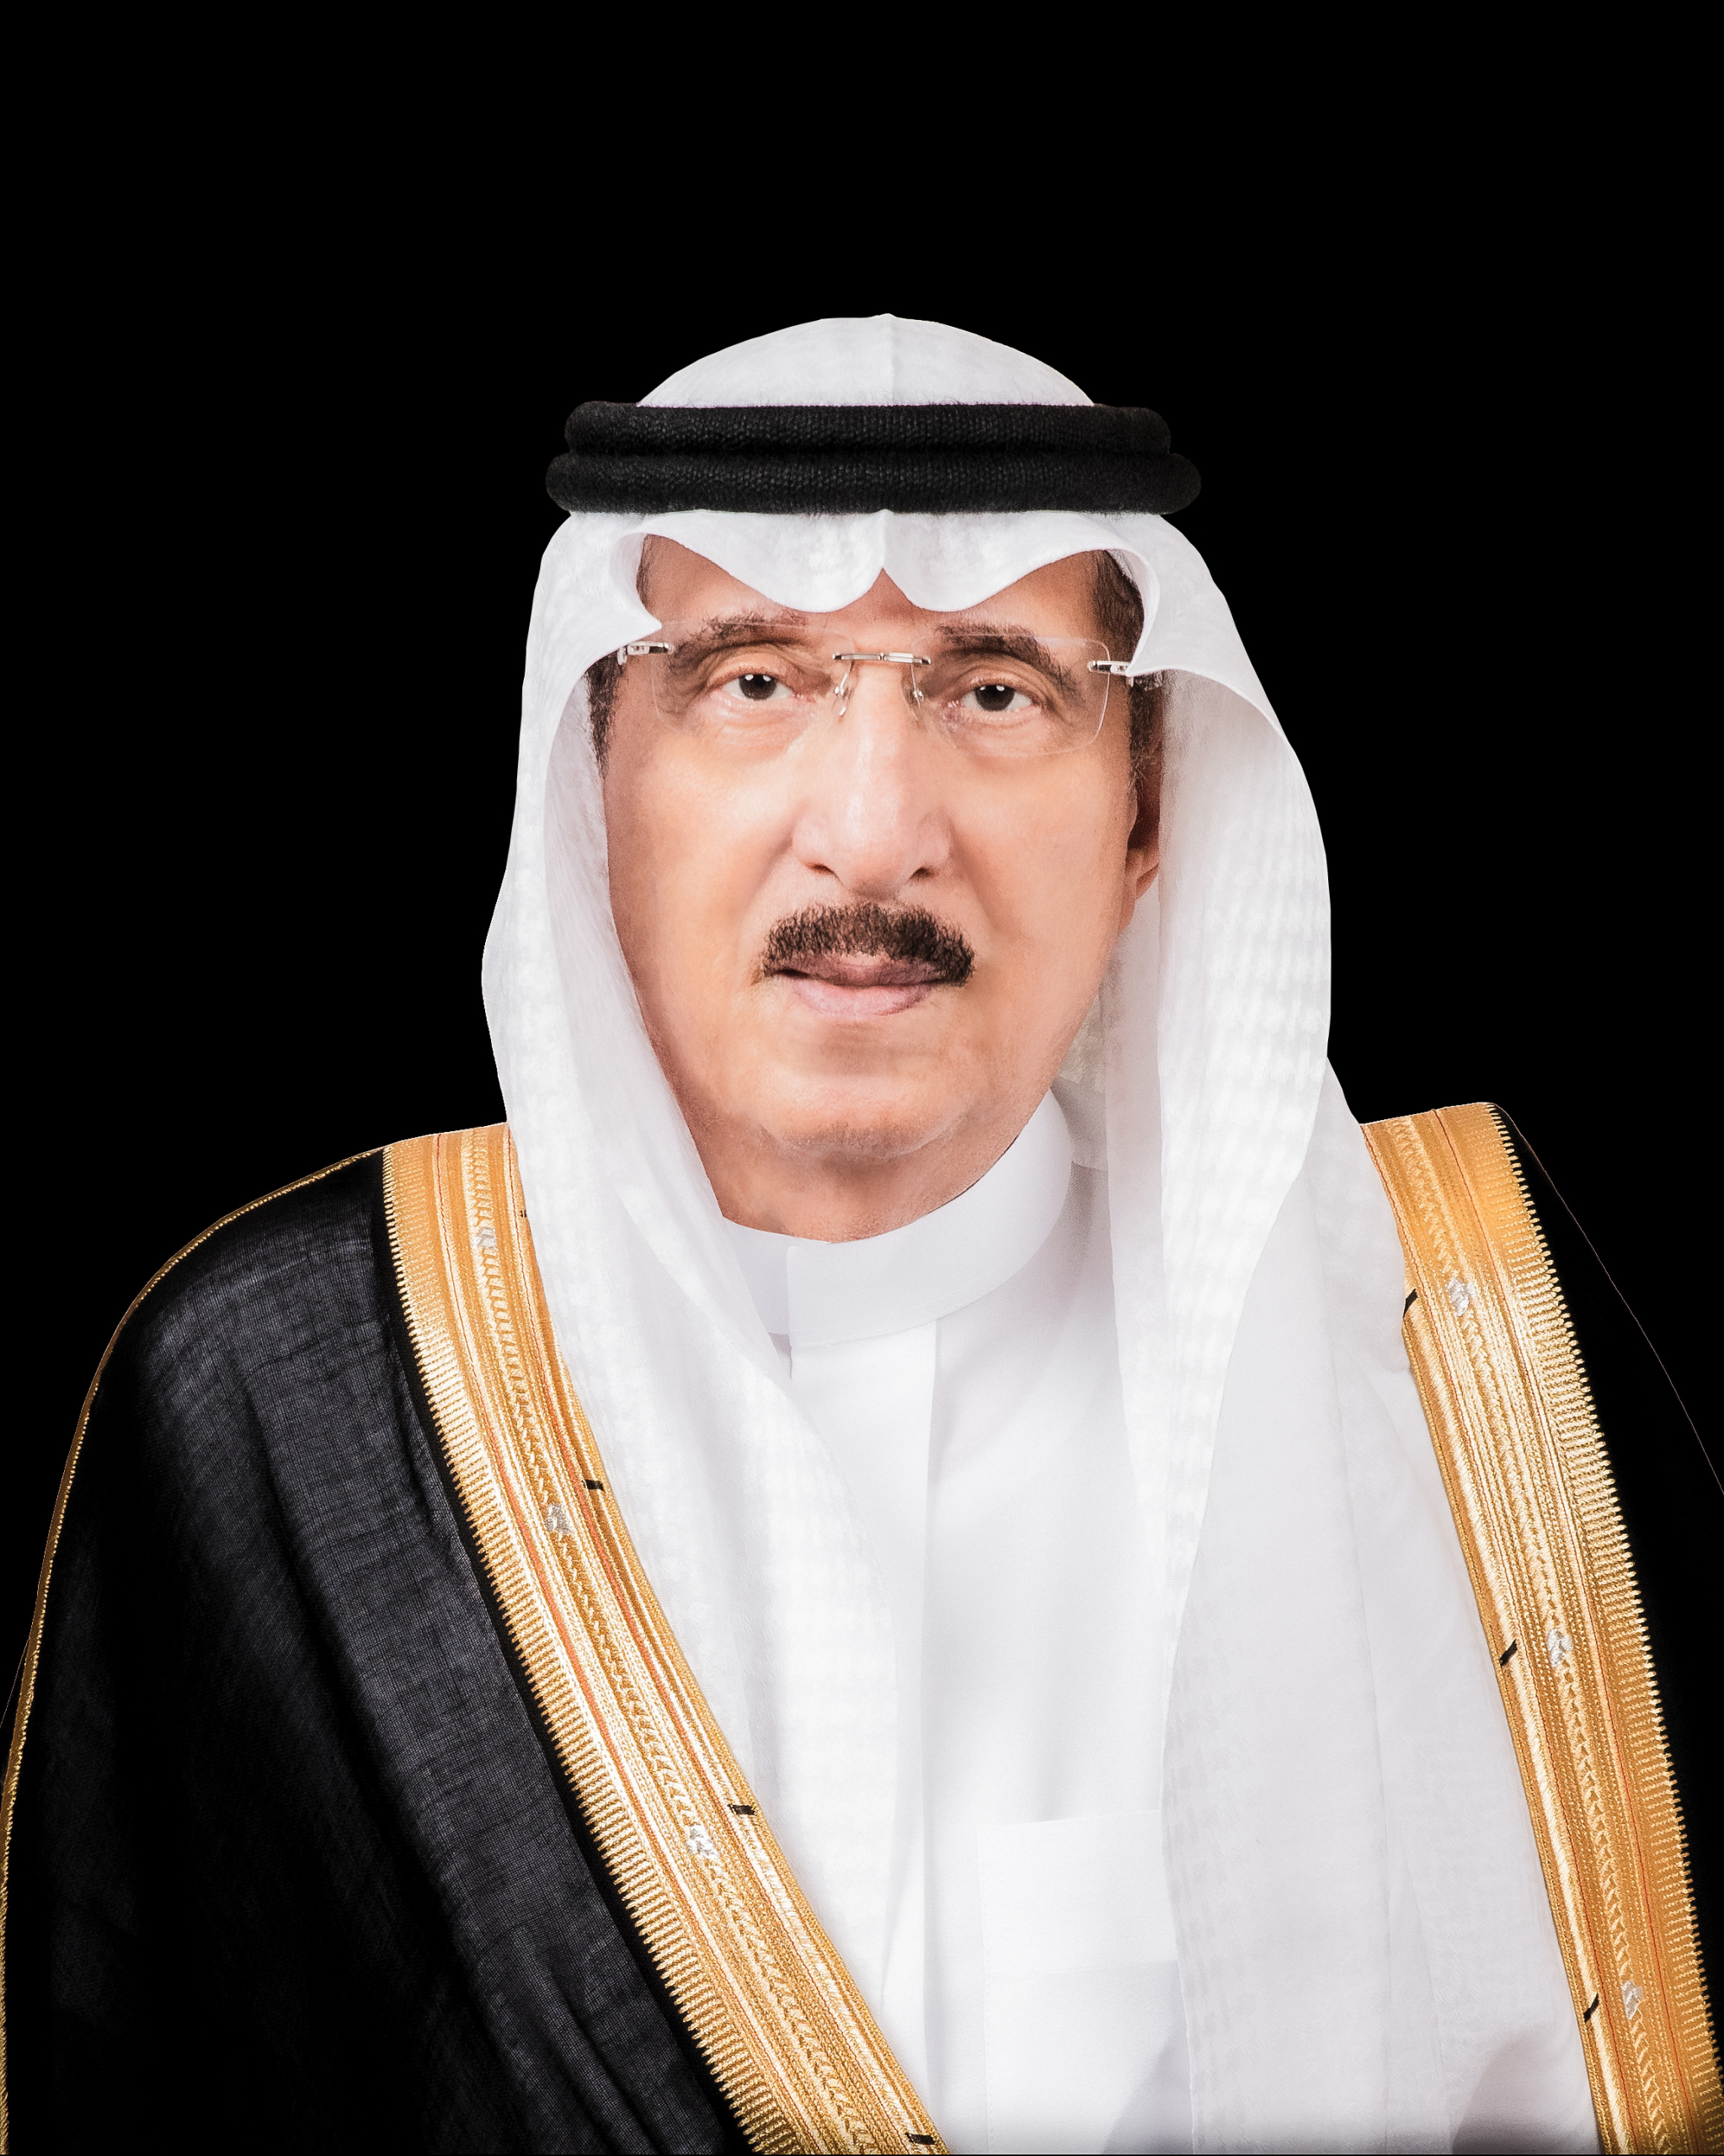 الأمير محمد بن ناصر: خطوات متلاحقة لنهضة اقتصادية وصناعية متطورة في جازان